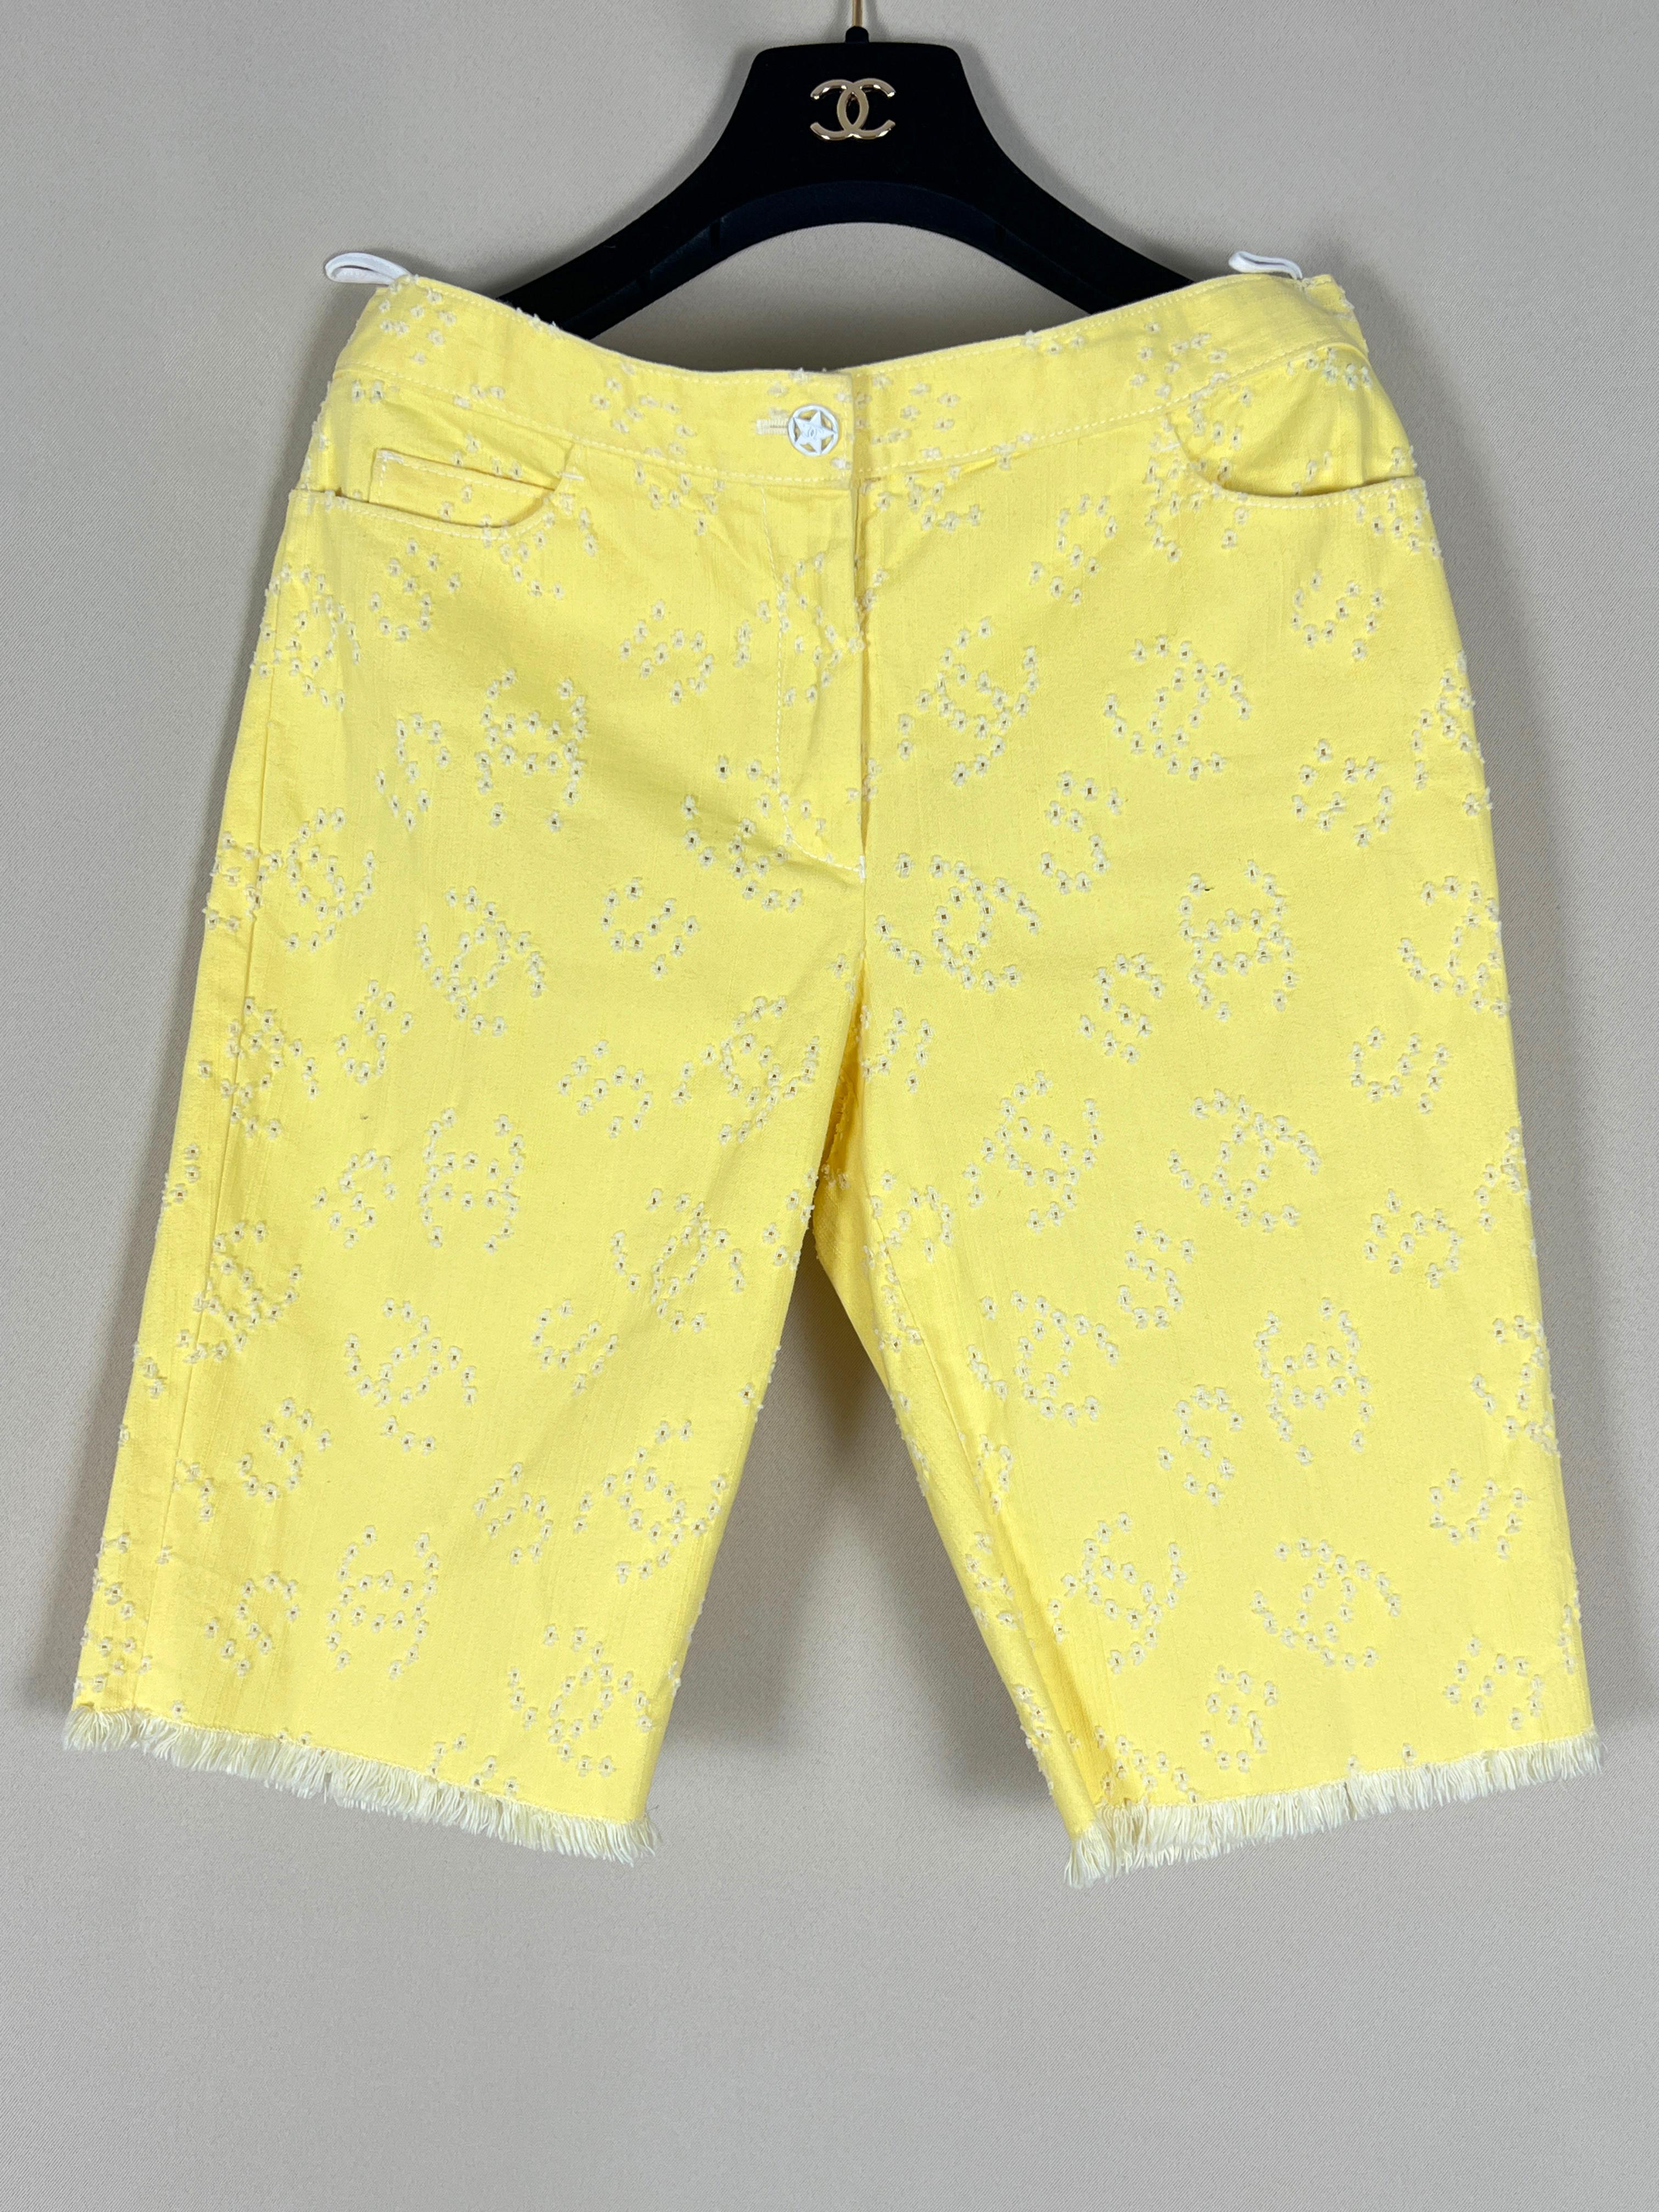 New Chanel gelbe Denim-Shorts mit CC-Logo & Nr. 5 perforierte Symbole.
Größenbezeichnung 36 FR. 